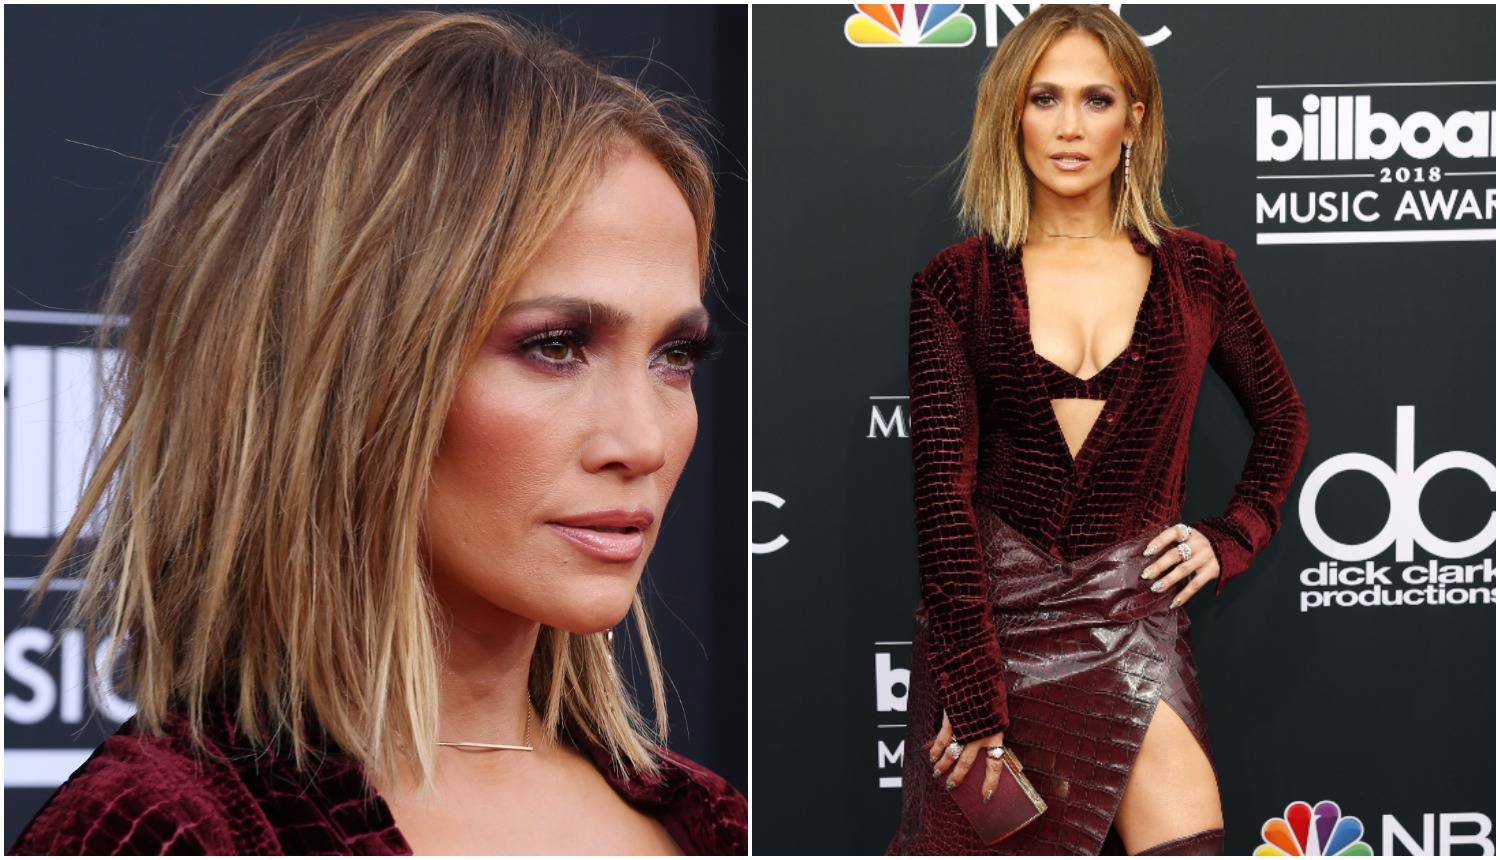 Novi imidž: Jennifer Lopez se 'nije počešljala' za crveni tepih